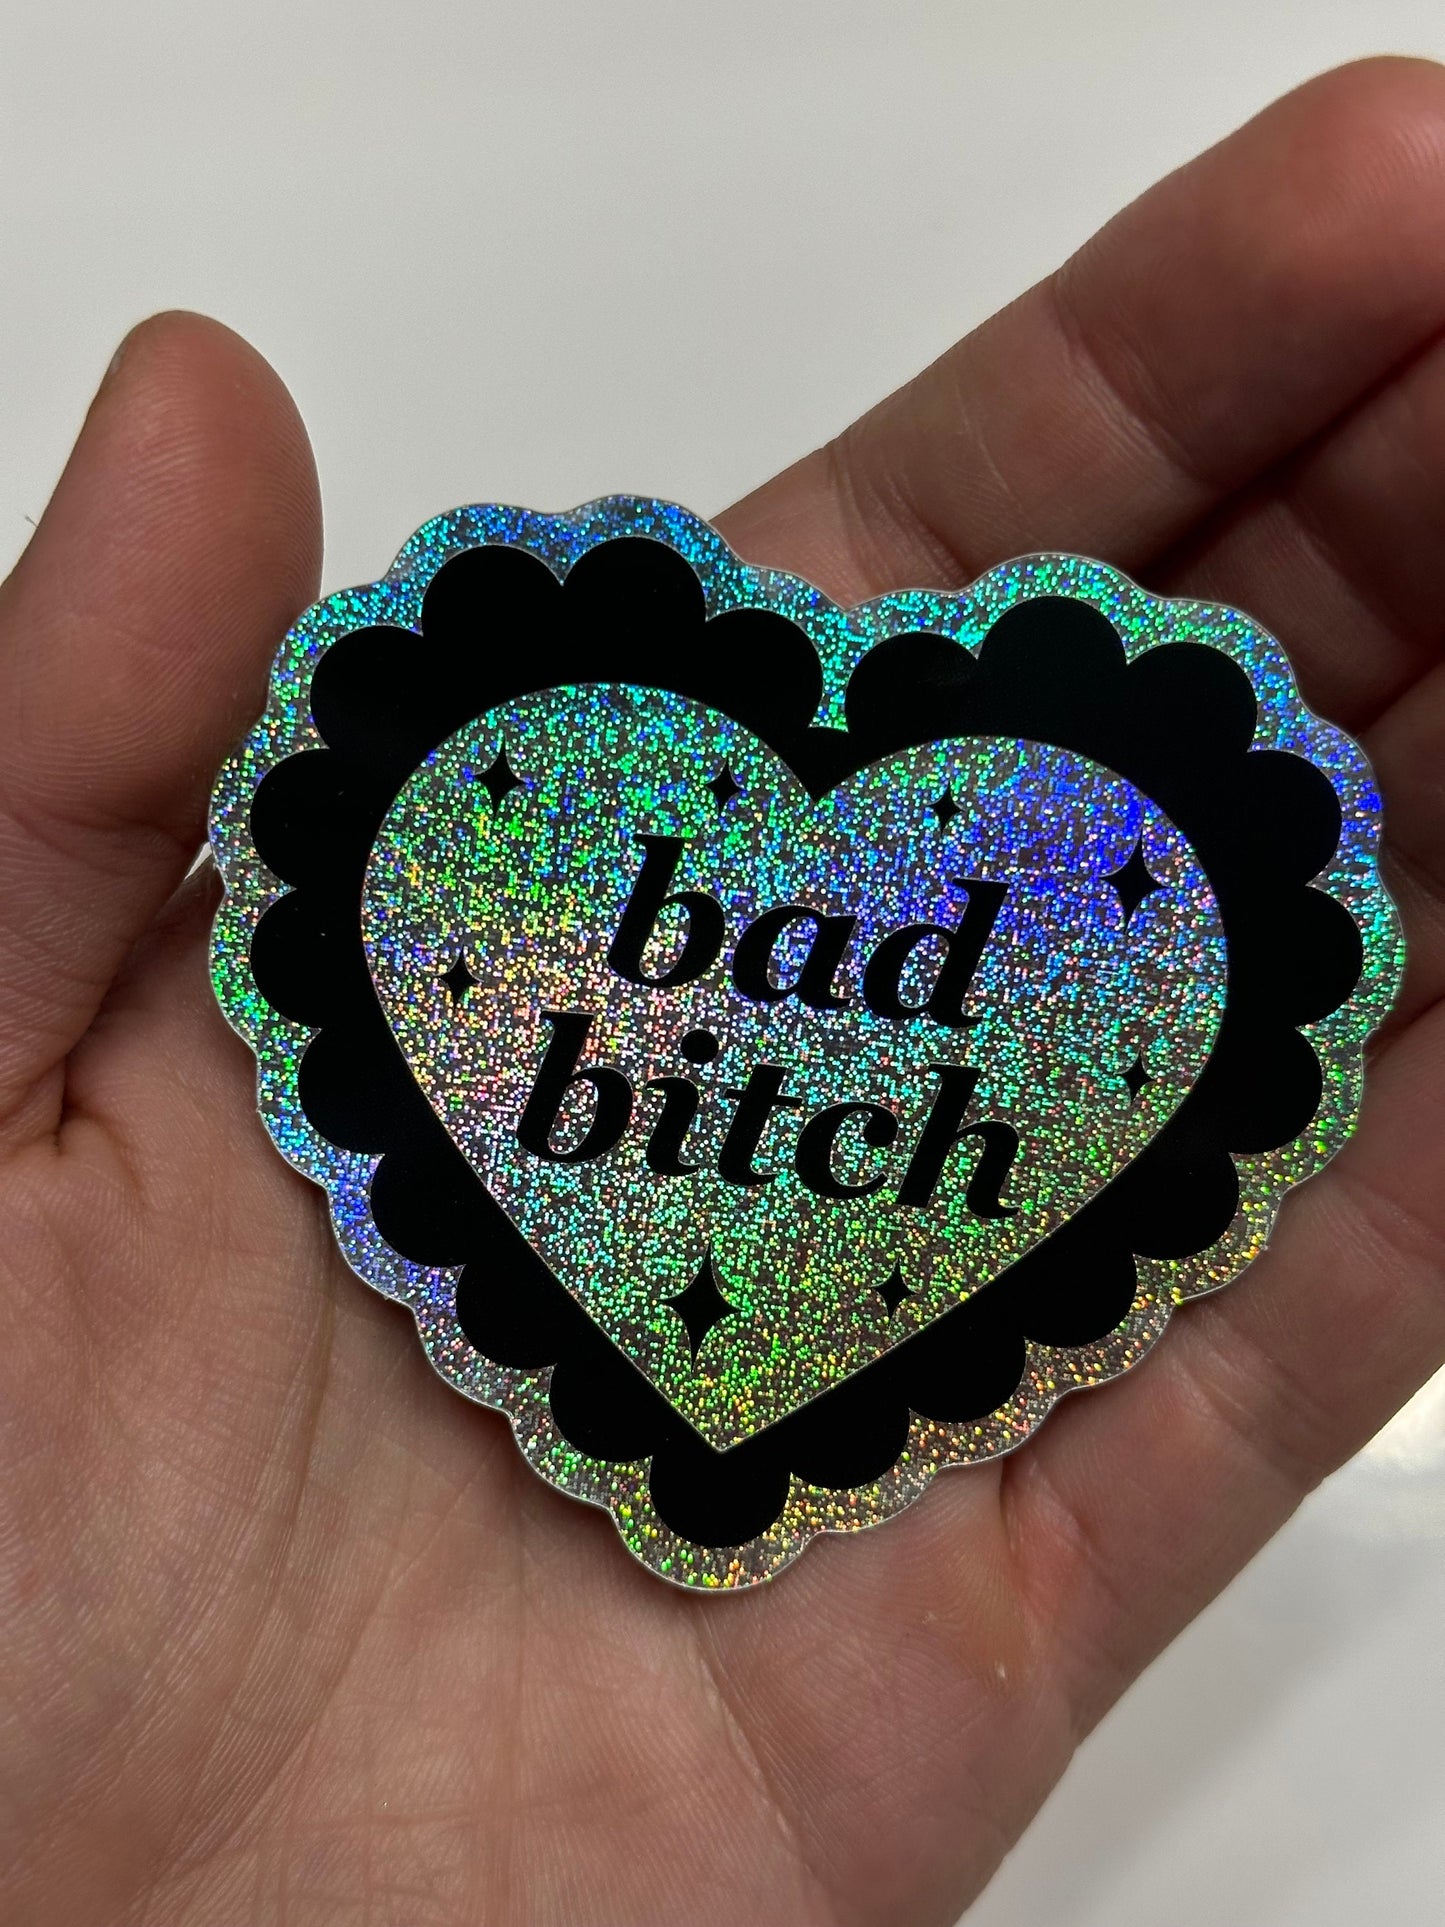 Bad Bitch Pixie Dust Sticker 2.7x2.5